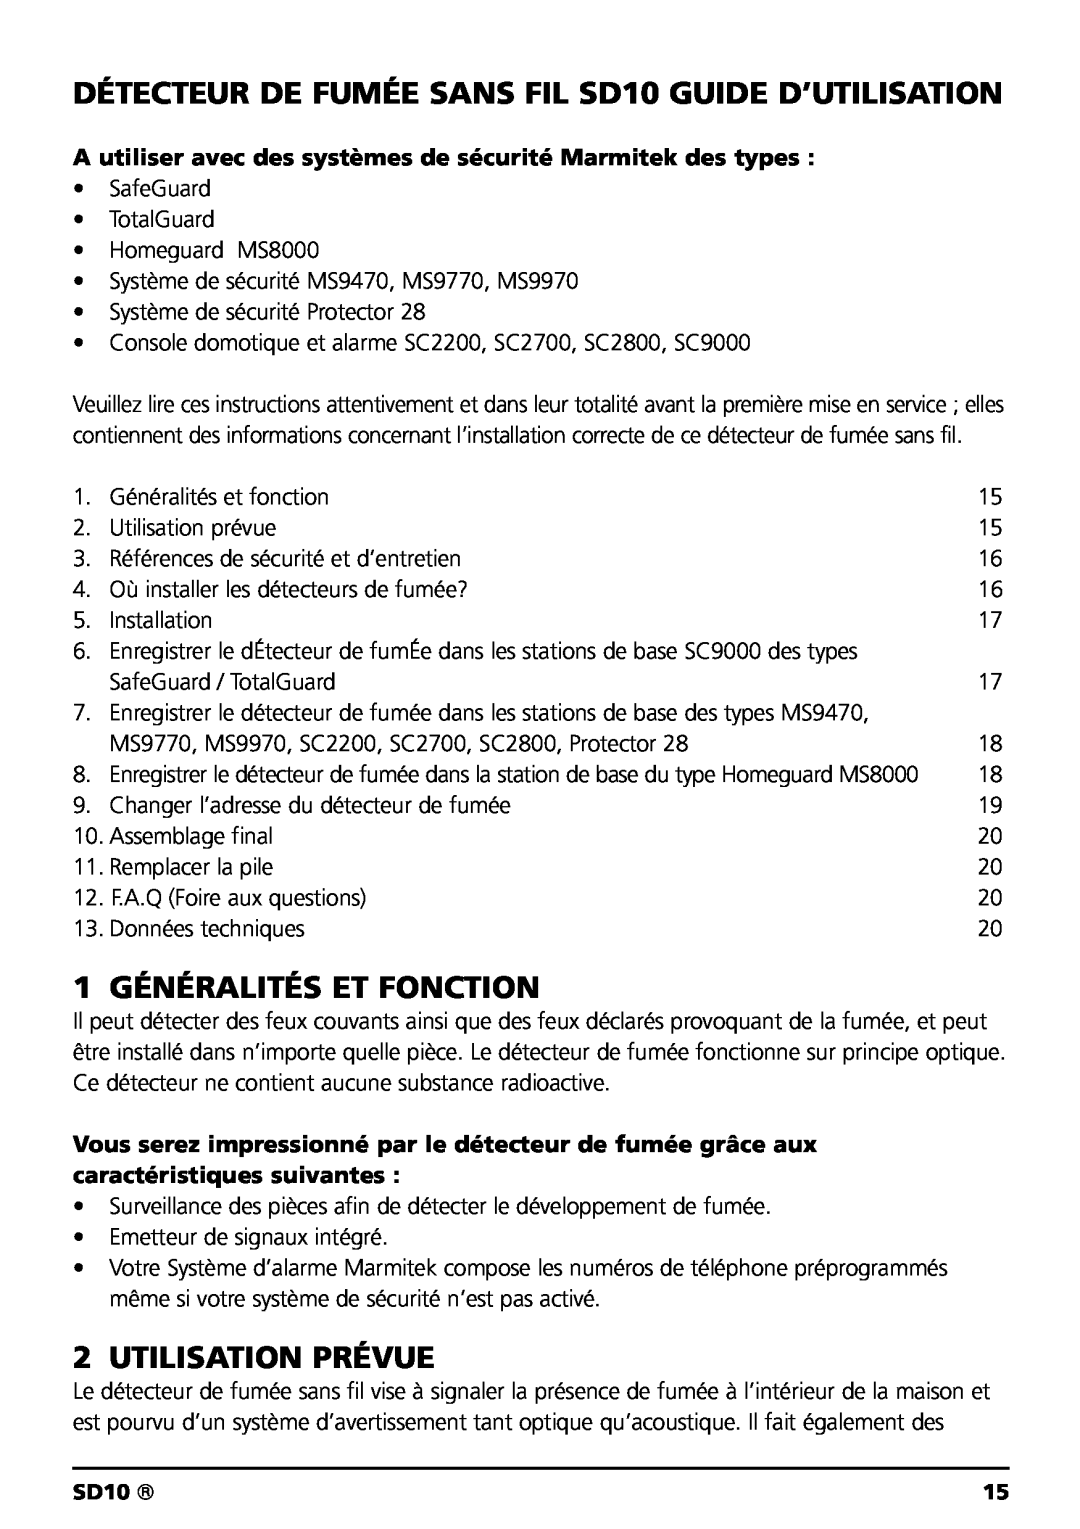 Marmitek SD10 owner manual 1 GÉNÉRALITÉS ET FONCTION, Utilisation Prévue 